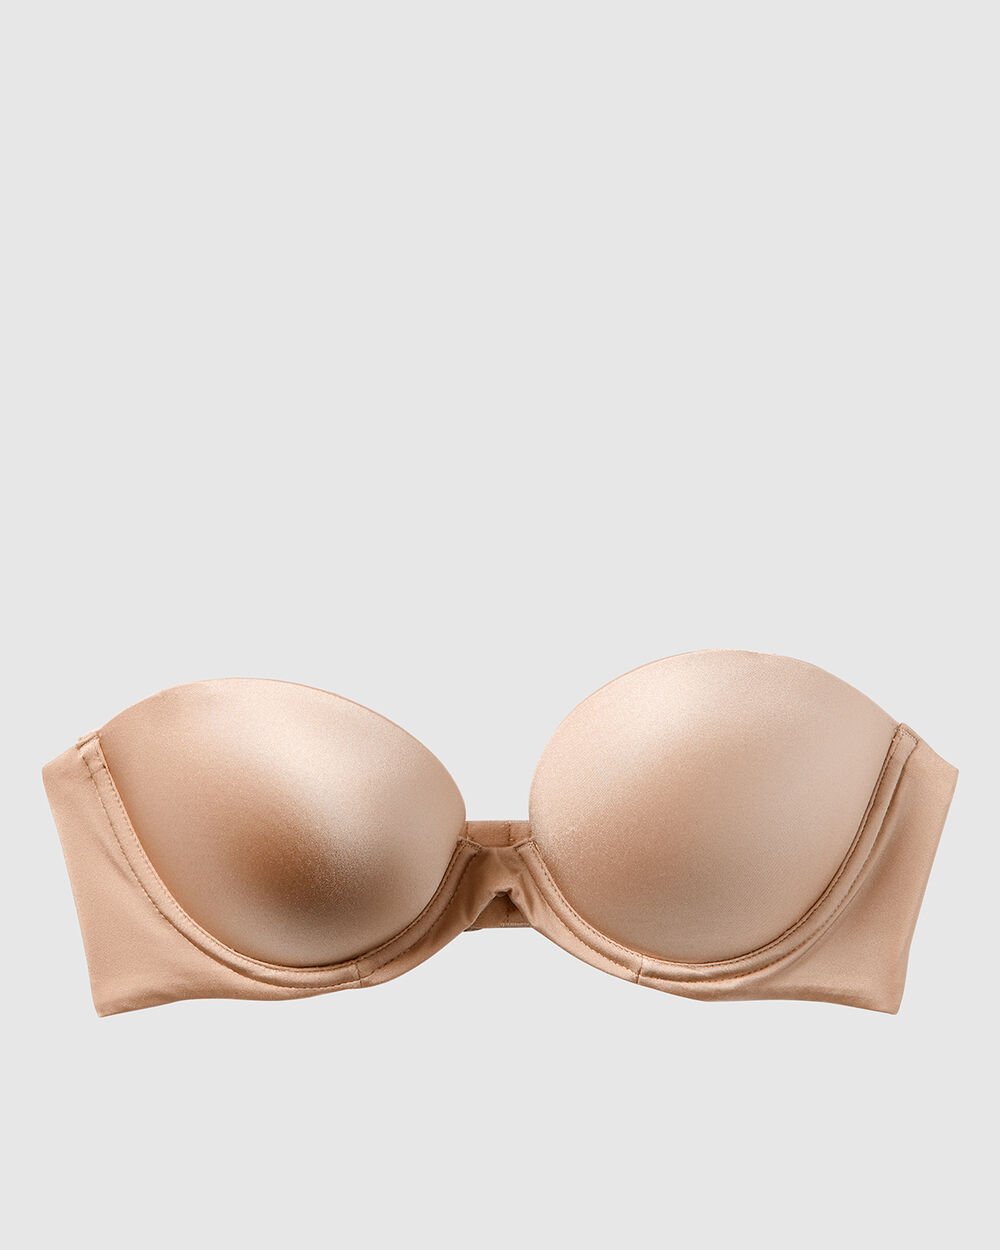 Sexy Back Strapless Bra Padded strapless bra for women – Basic